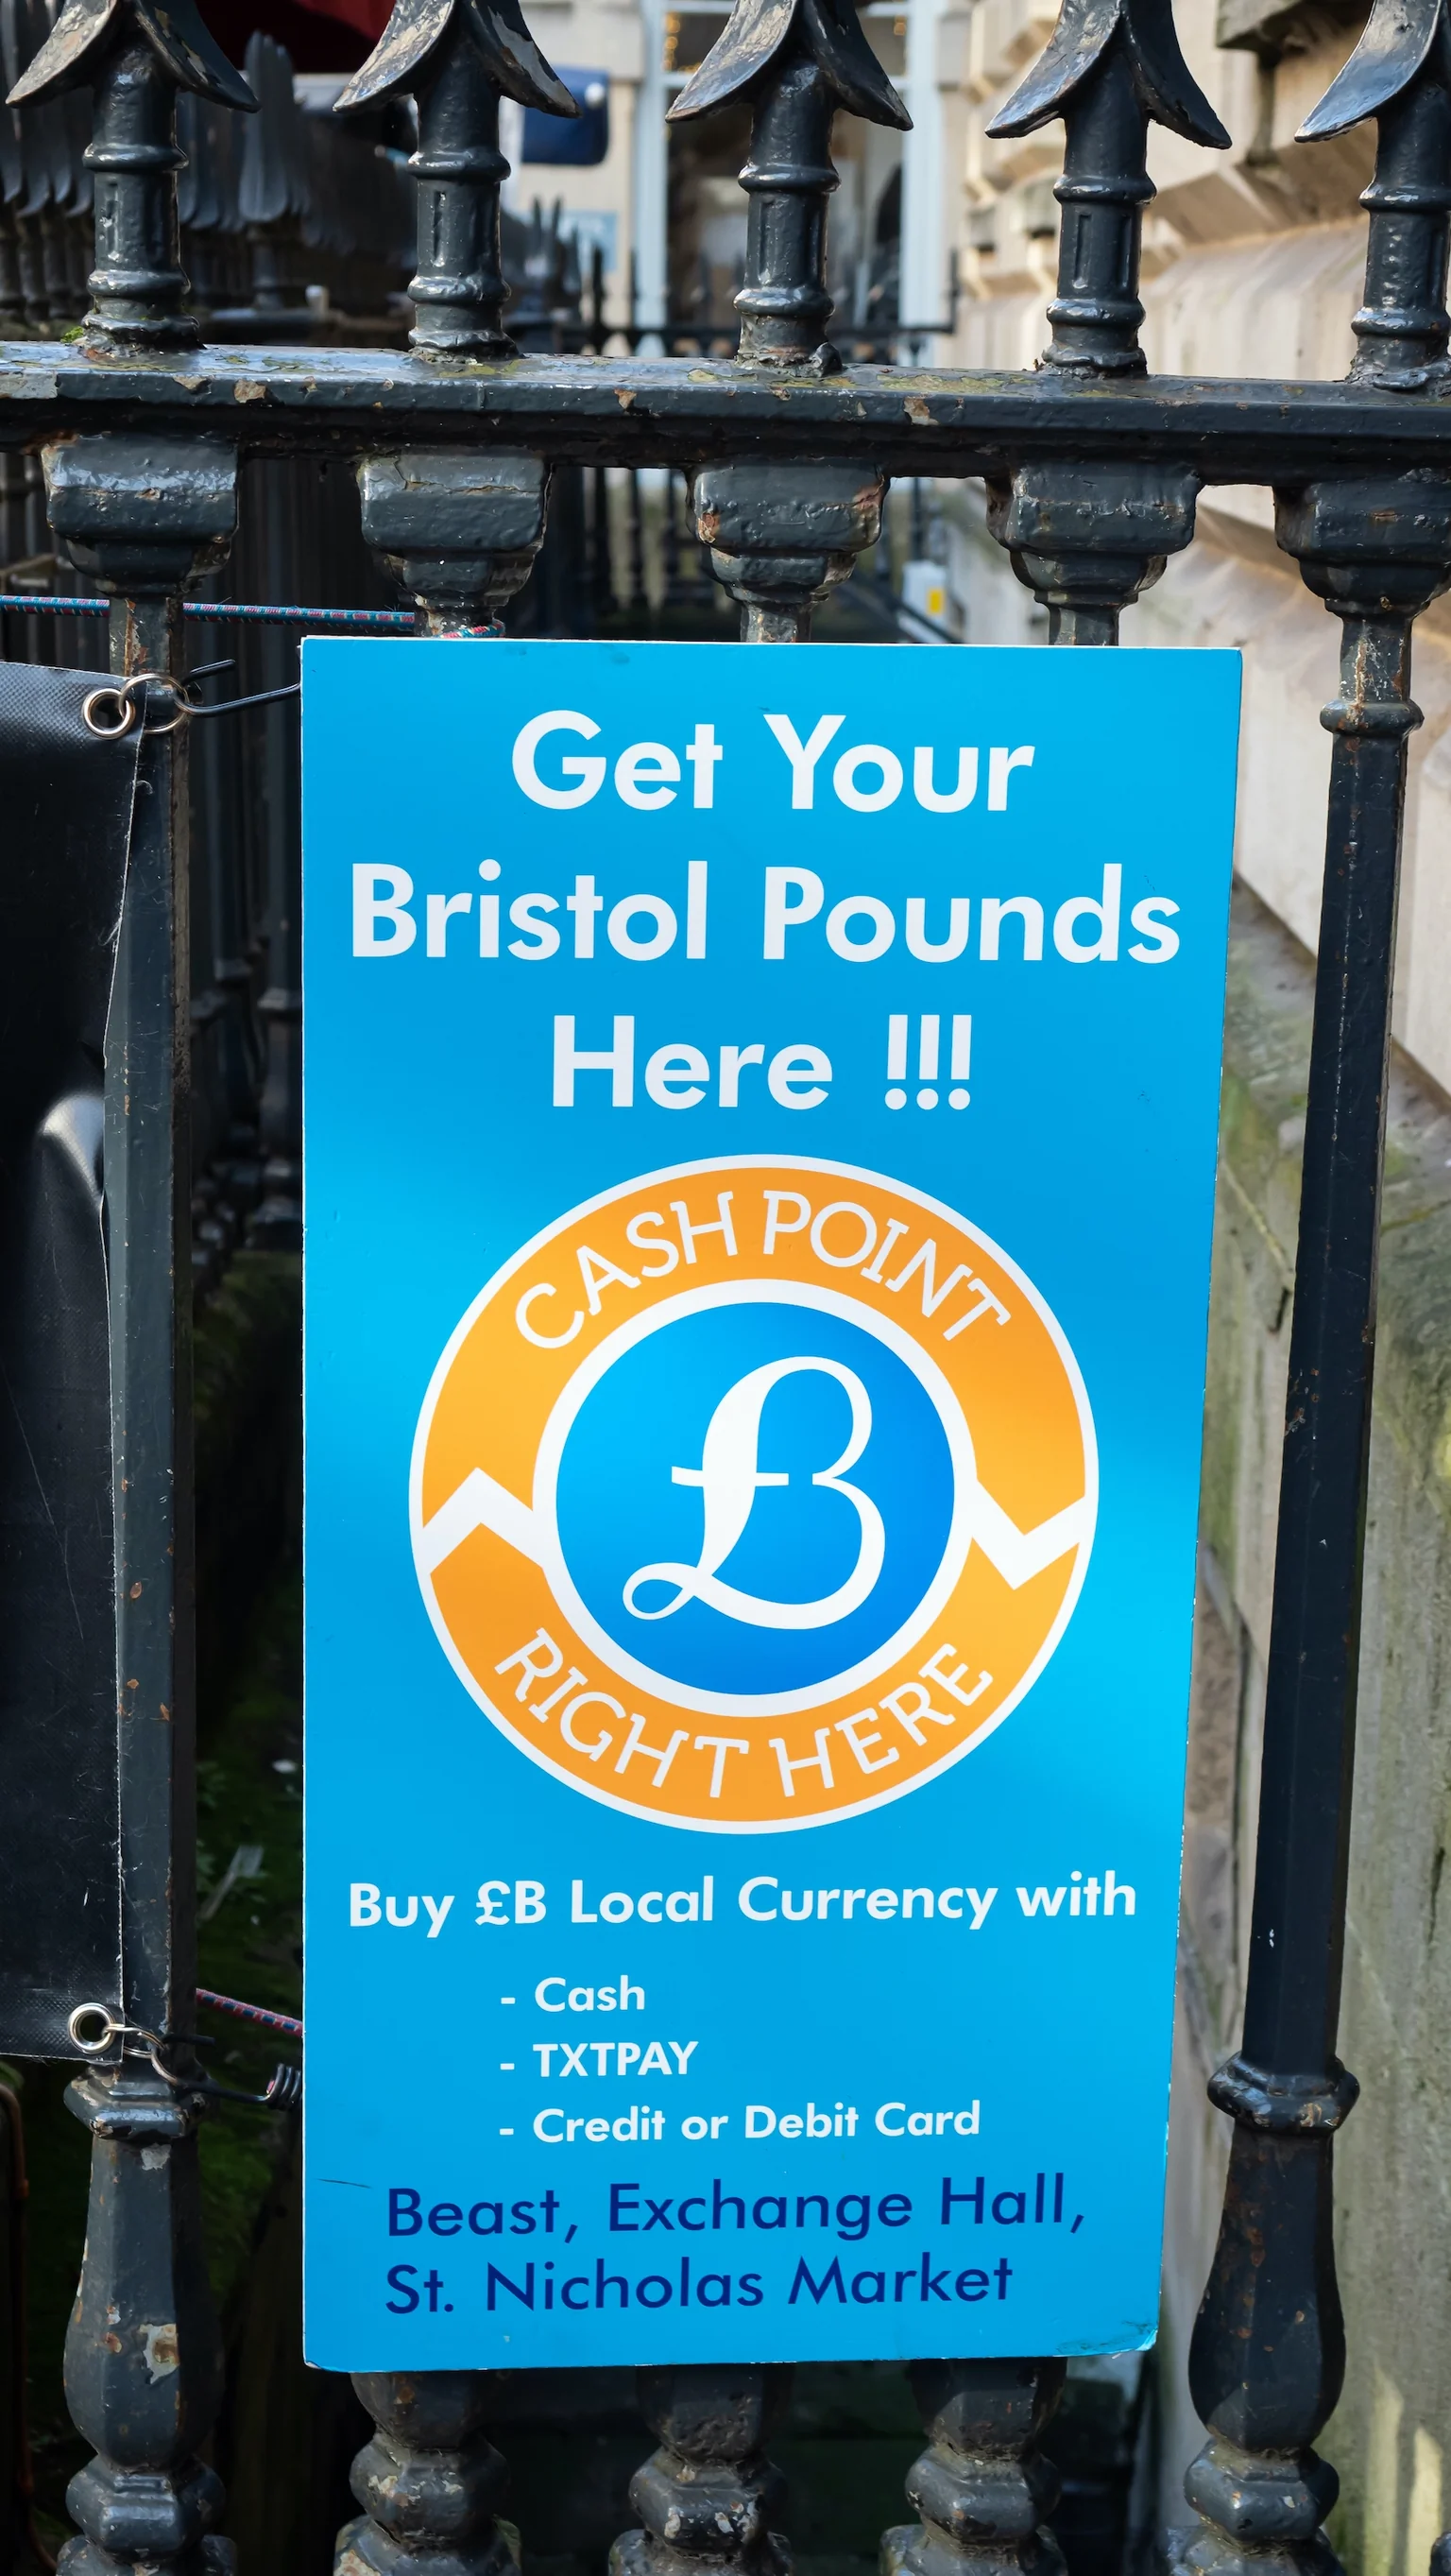 Bristol Pound